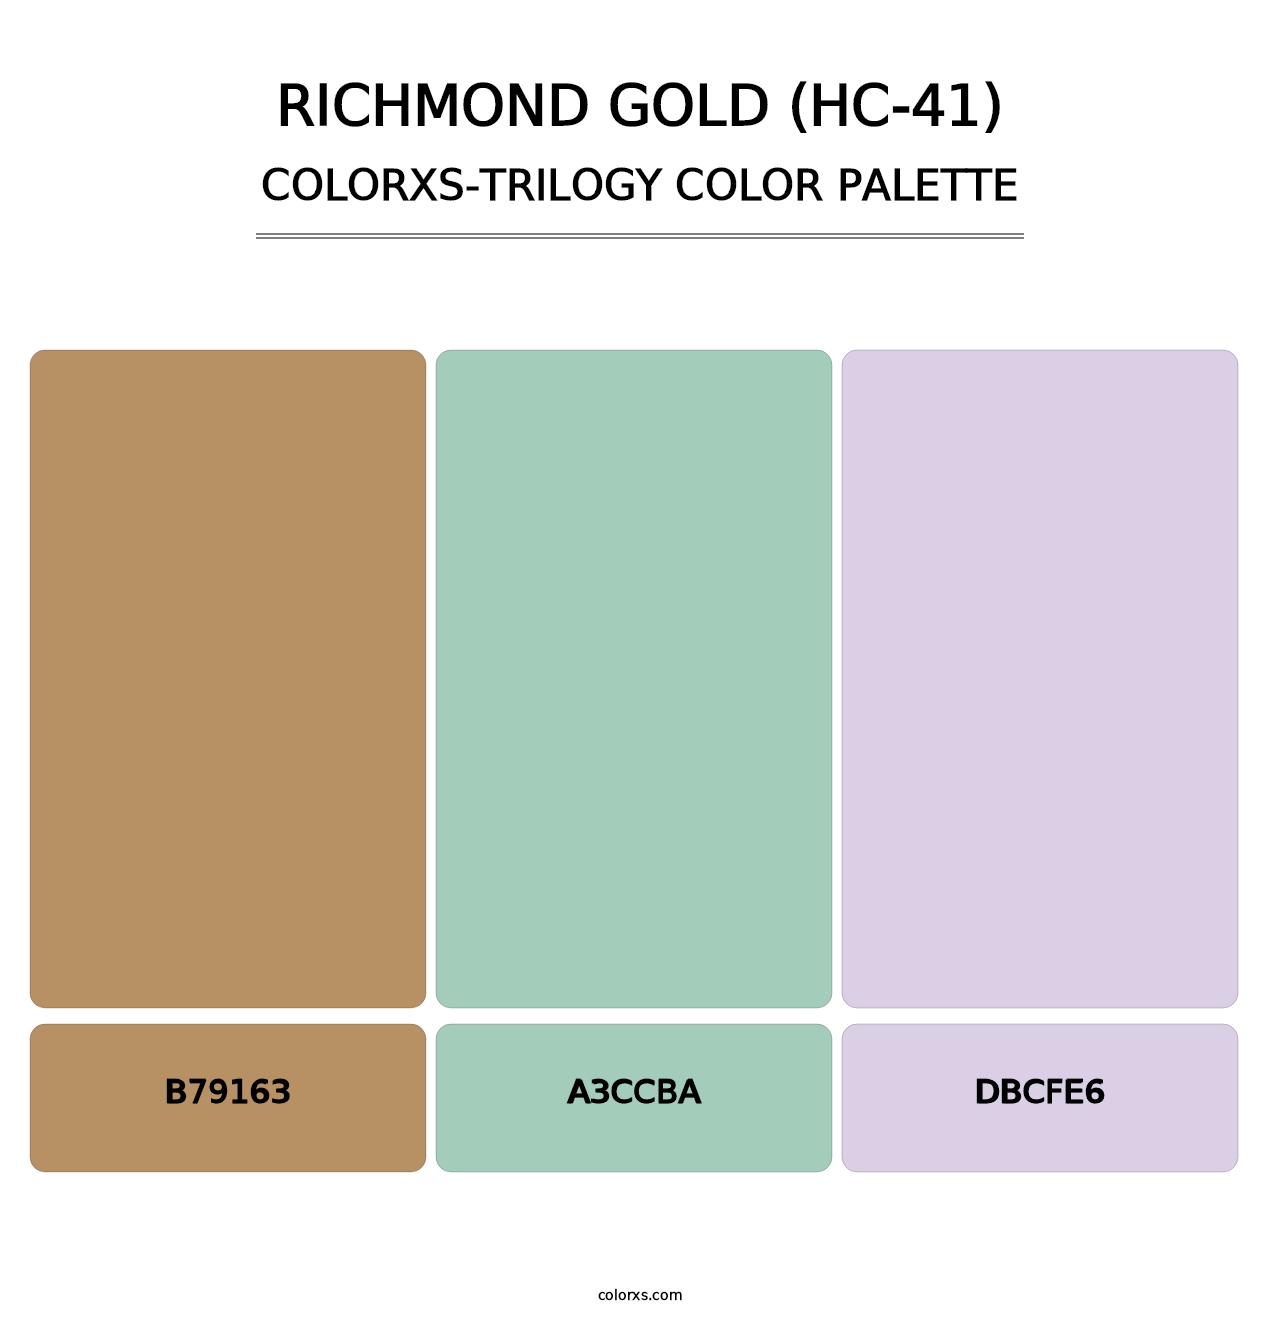 Richmond Gold (HC-41) - Colorxs Trilogy Palette